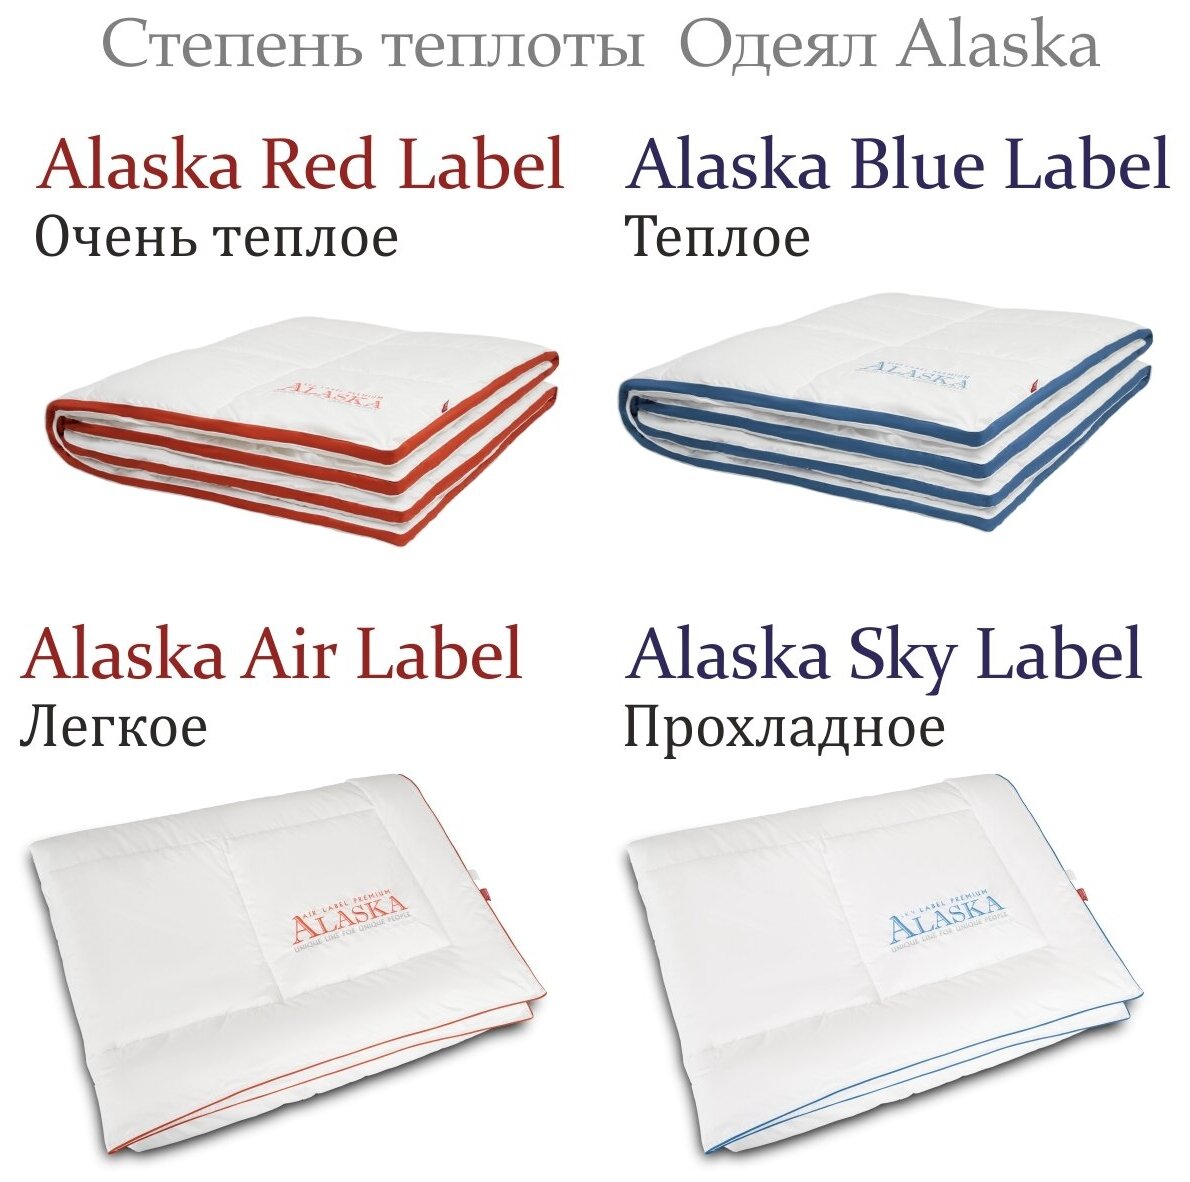 Стеганое одеяло Alaska "Sky Label" /Аляска Скай Лейбл, прохладное 200х220см - фотография № 8